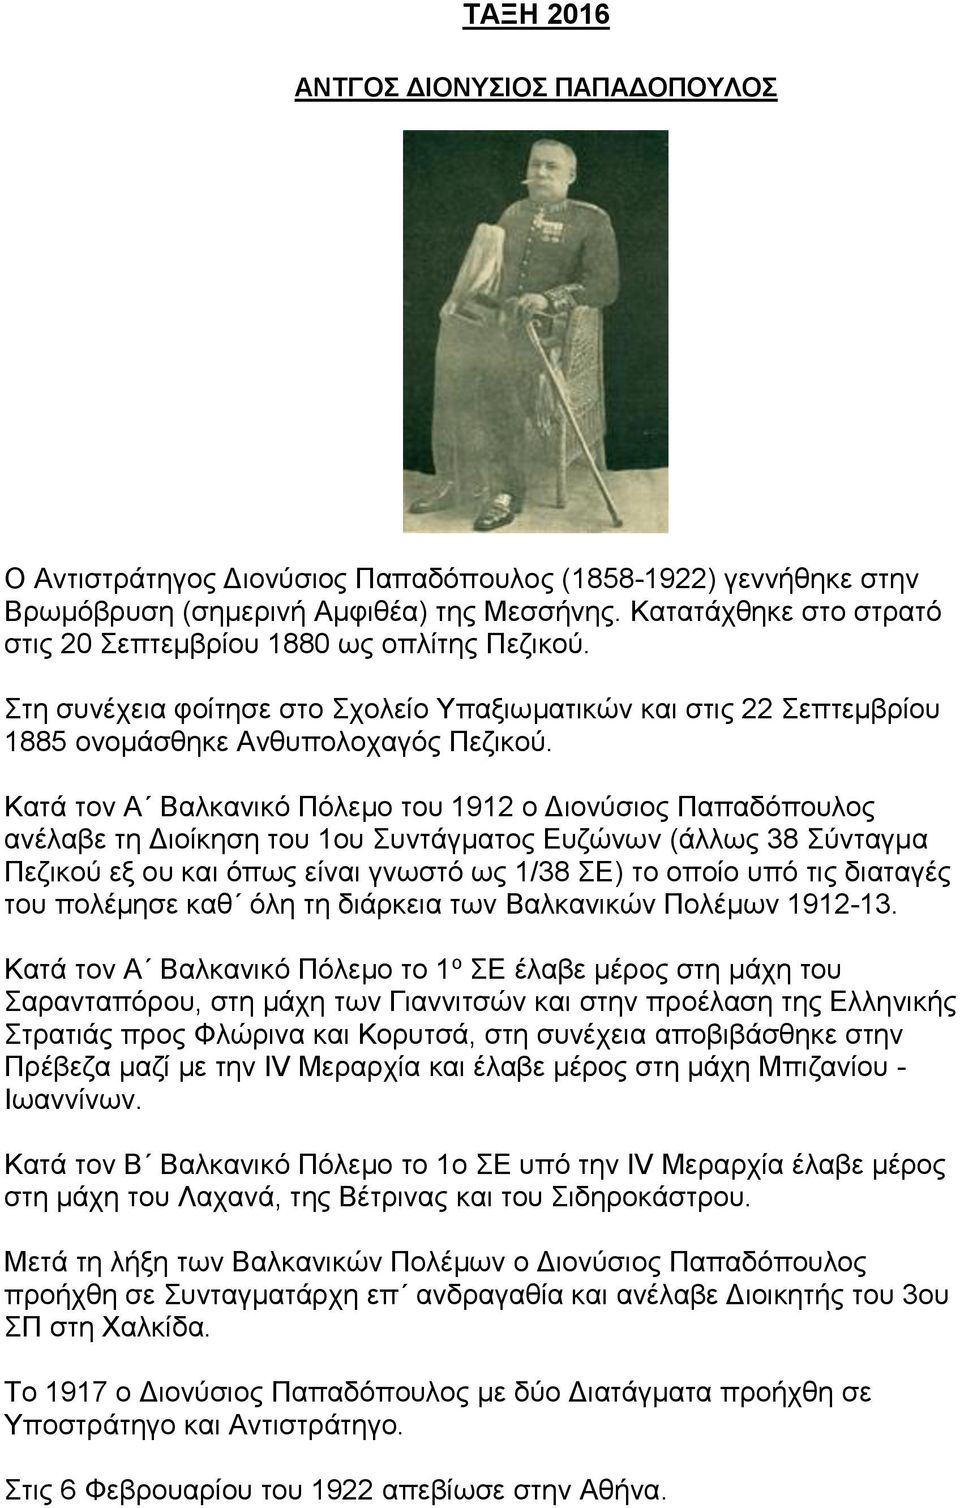 Κατά τον Α Βαλκανικό Πόλεμο του 1912 ο Διονύσιος Παπαδόπουλος ανέλαβε τη Διοίκηση του 1ου Συντάγματος Ευζώνων (άλλως 38 Σύνταγμα Πεζικού εξ ου και όπως είναι γνωστό ως 1/38 ΣΕ) το οποίο υπό τις